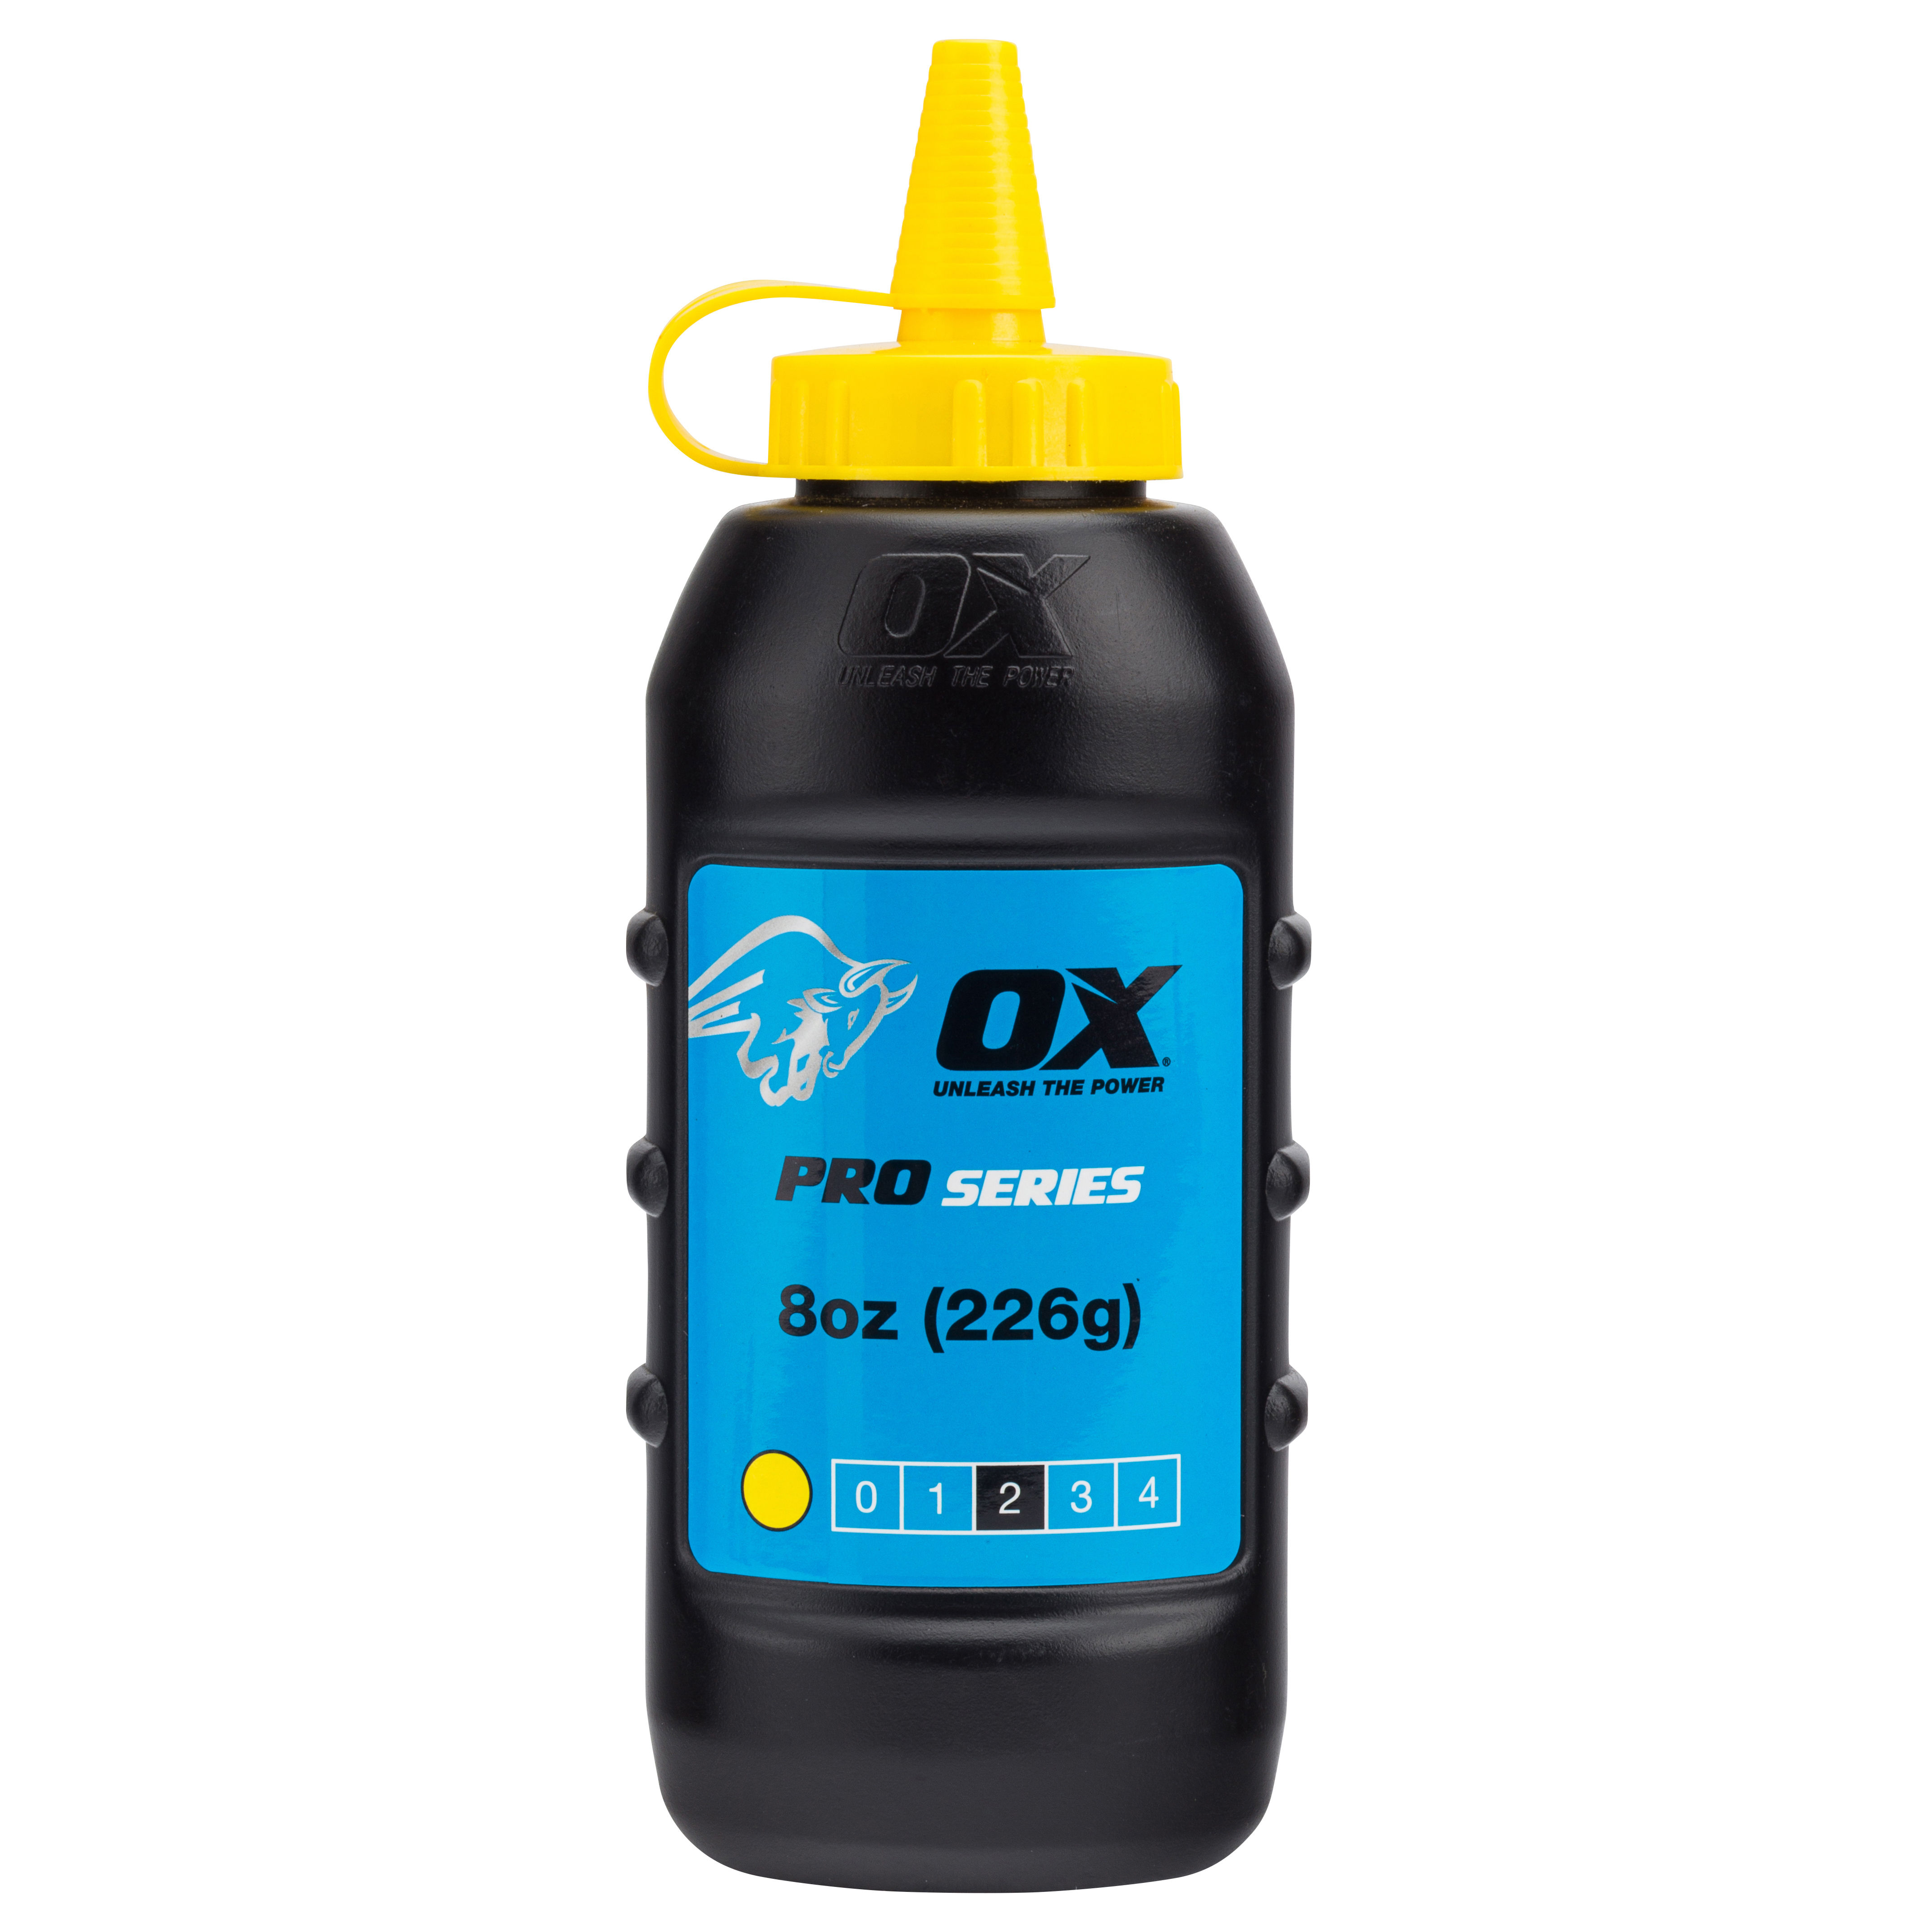 OX Pro Marking Chalk Powder Refill Yellow 226g - OX-P025703